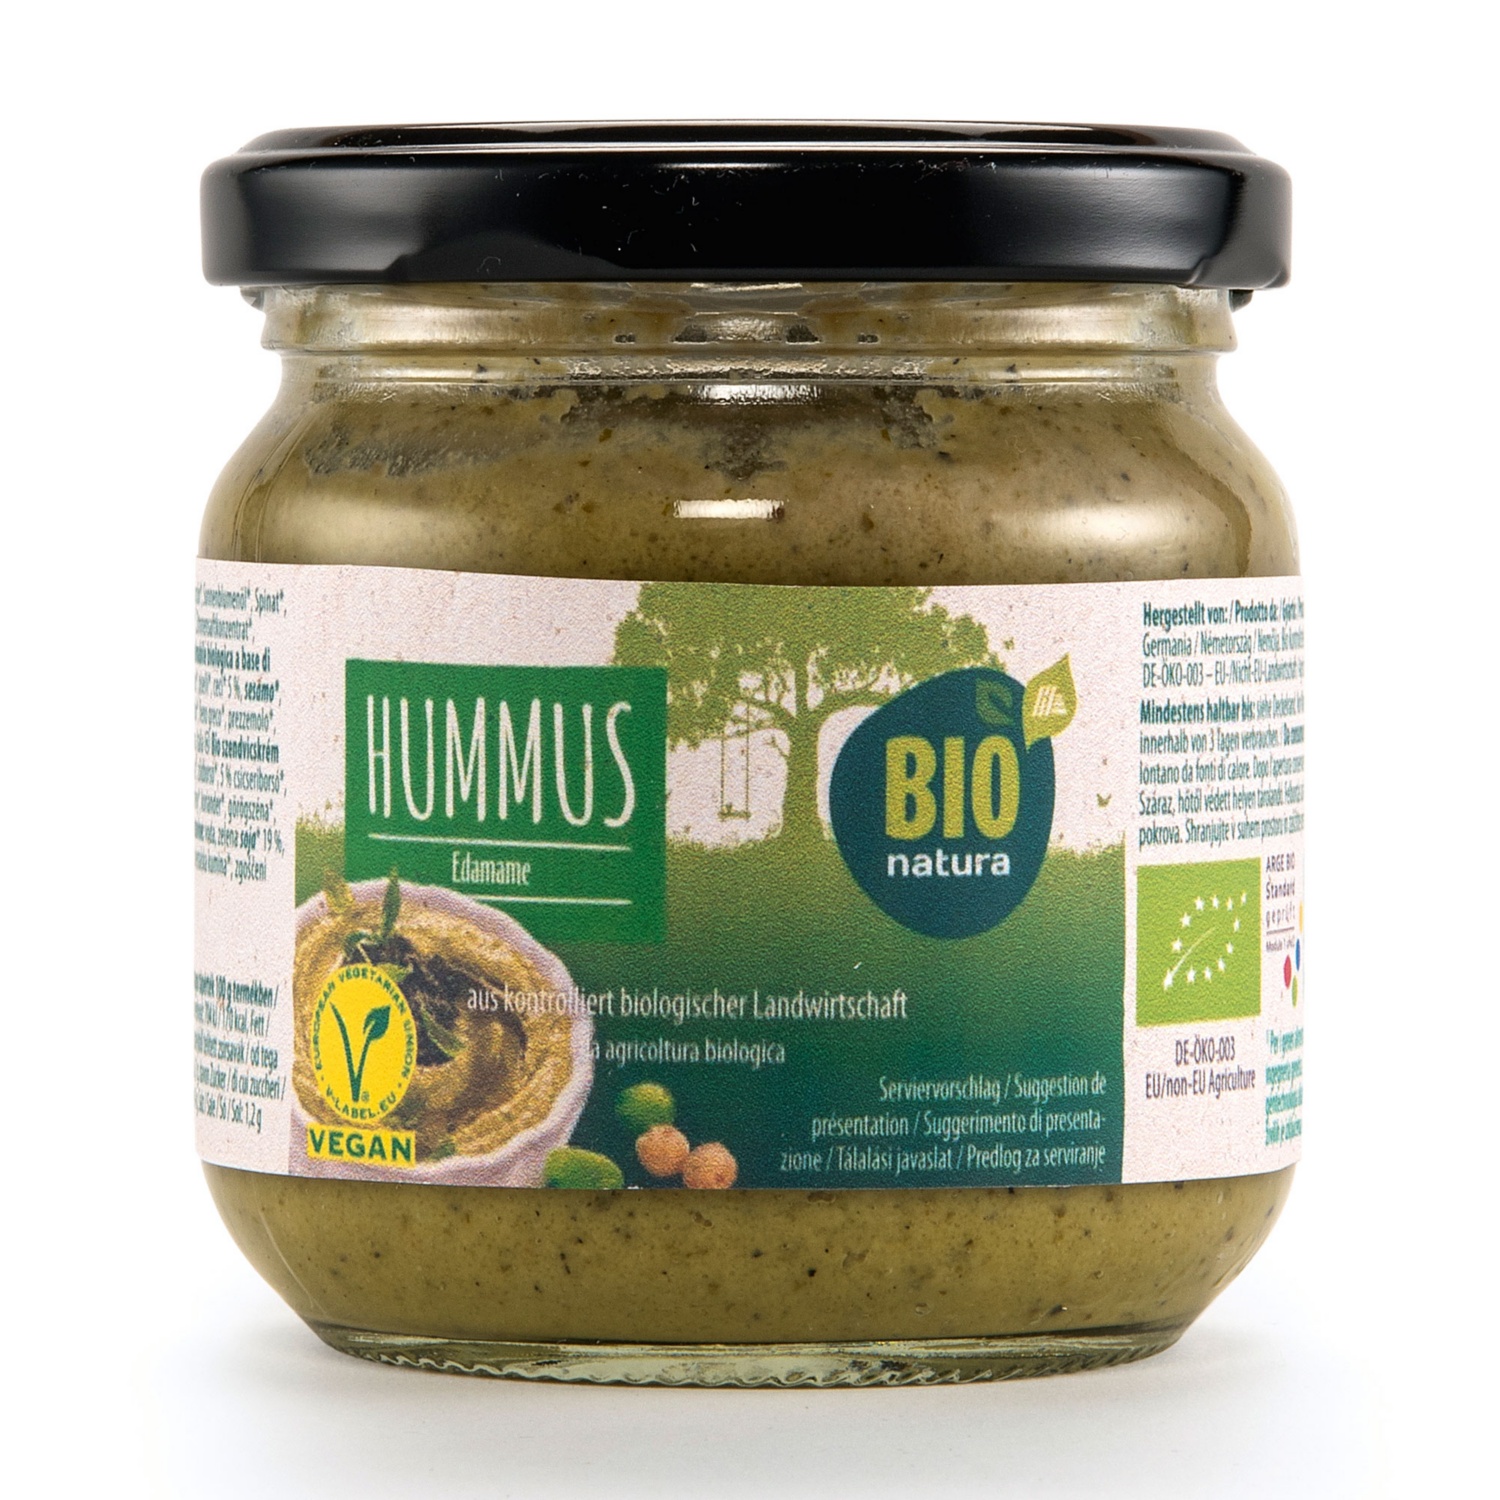 BIO NATURA Bio humus, sojin